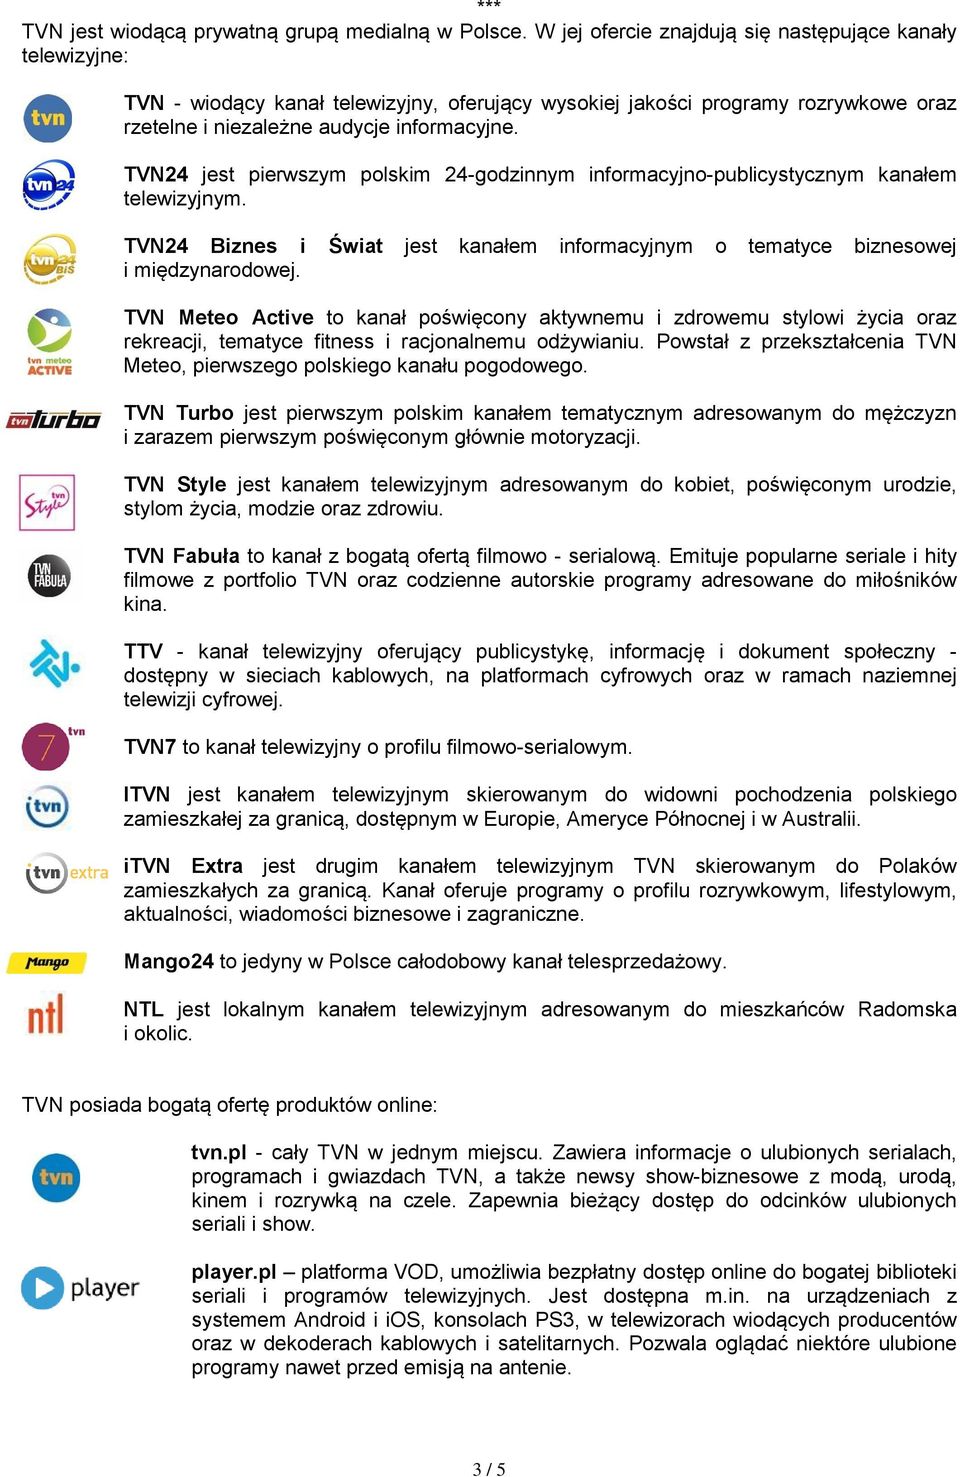 TVN24 jest pierwszym polskim 24-godzinnym informacyjno-publicystycznym kanałem telewizyjnym. TVN24 Biznes i Świat jest kanałem informacyjnym o tematyce biznesowej i międzynarodowej.